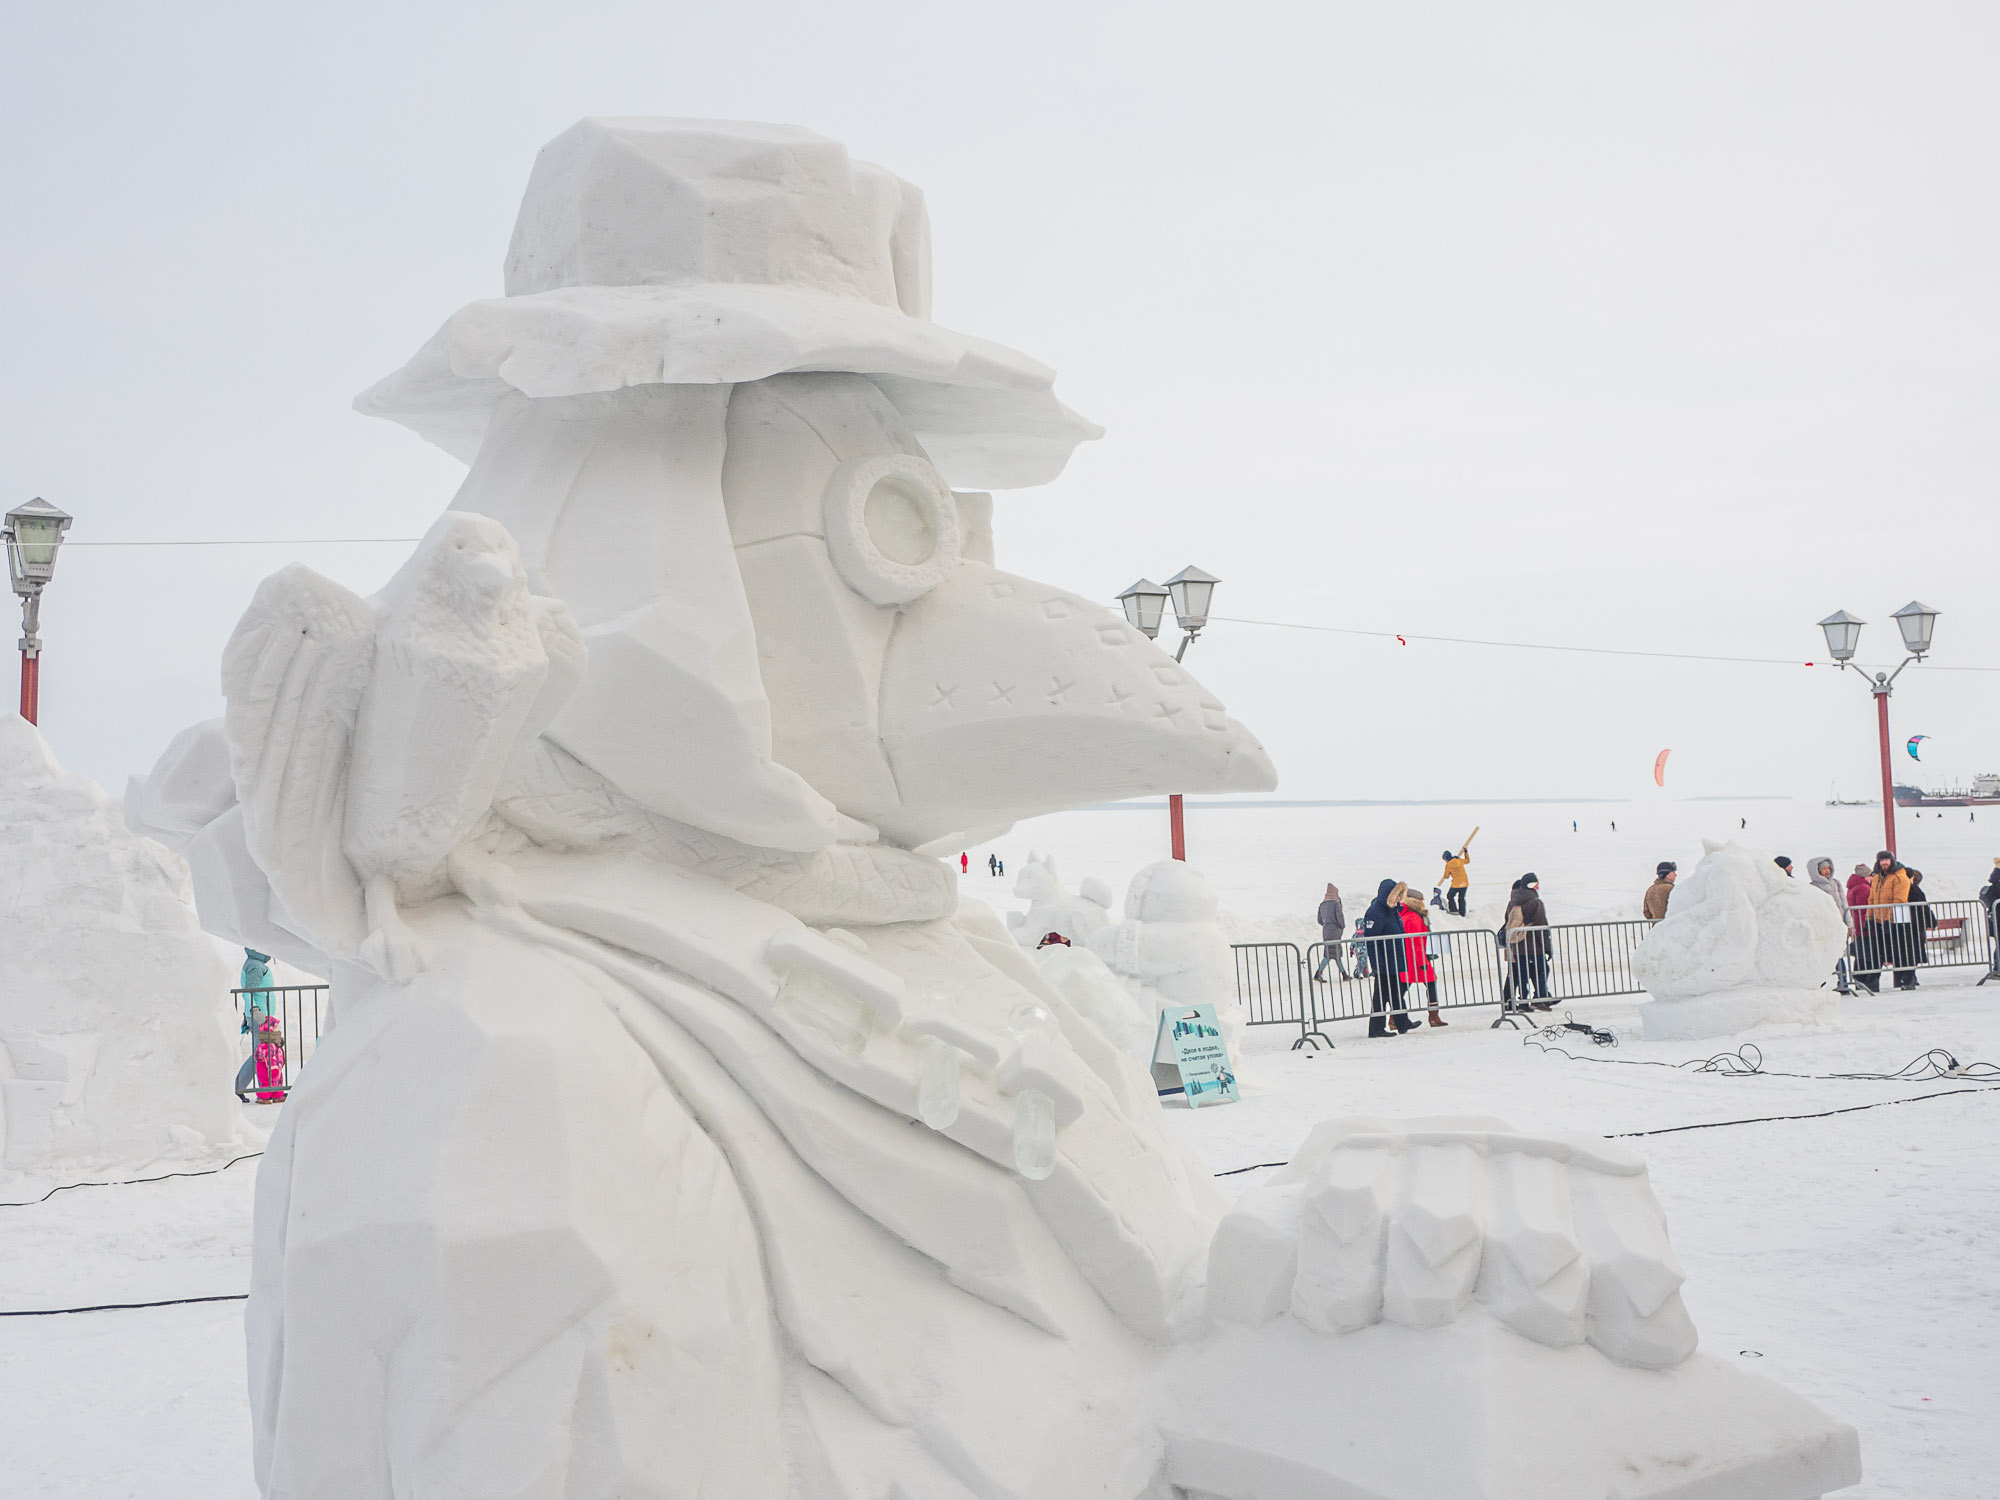 Вопросы организации фестиваля снежных и ледовых скульптур обсудят на открытой планерке в мэрии Петрозаводска 